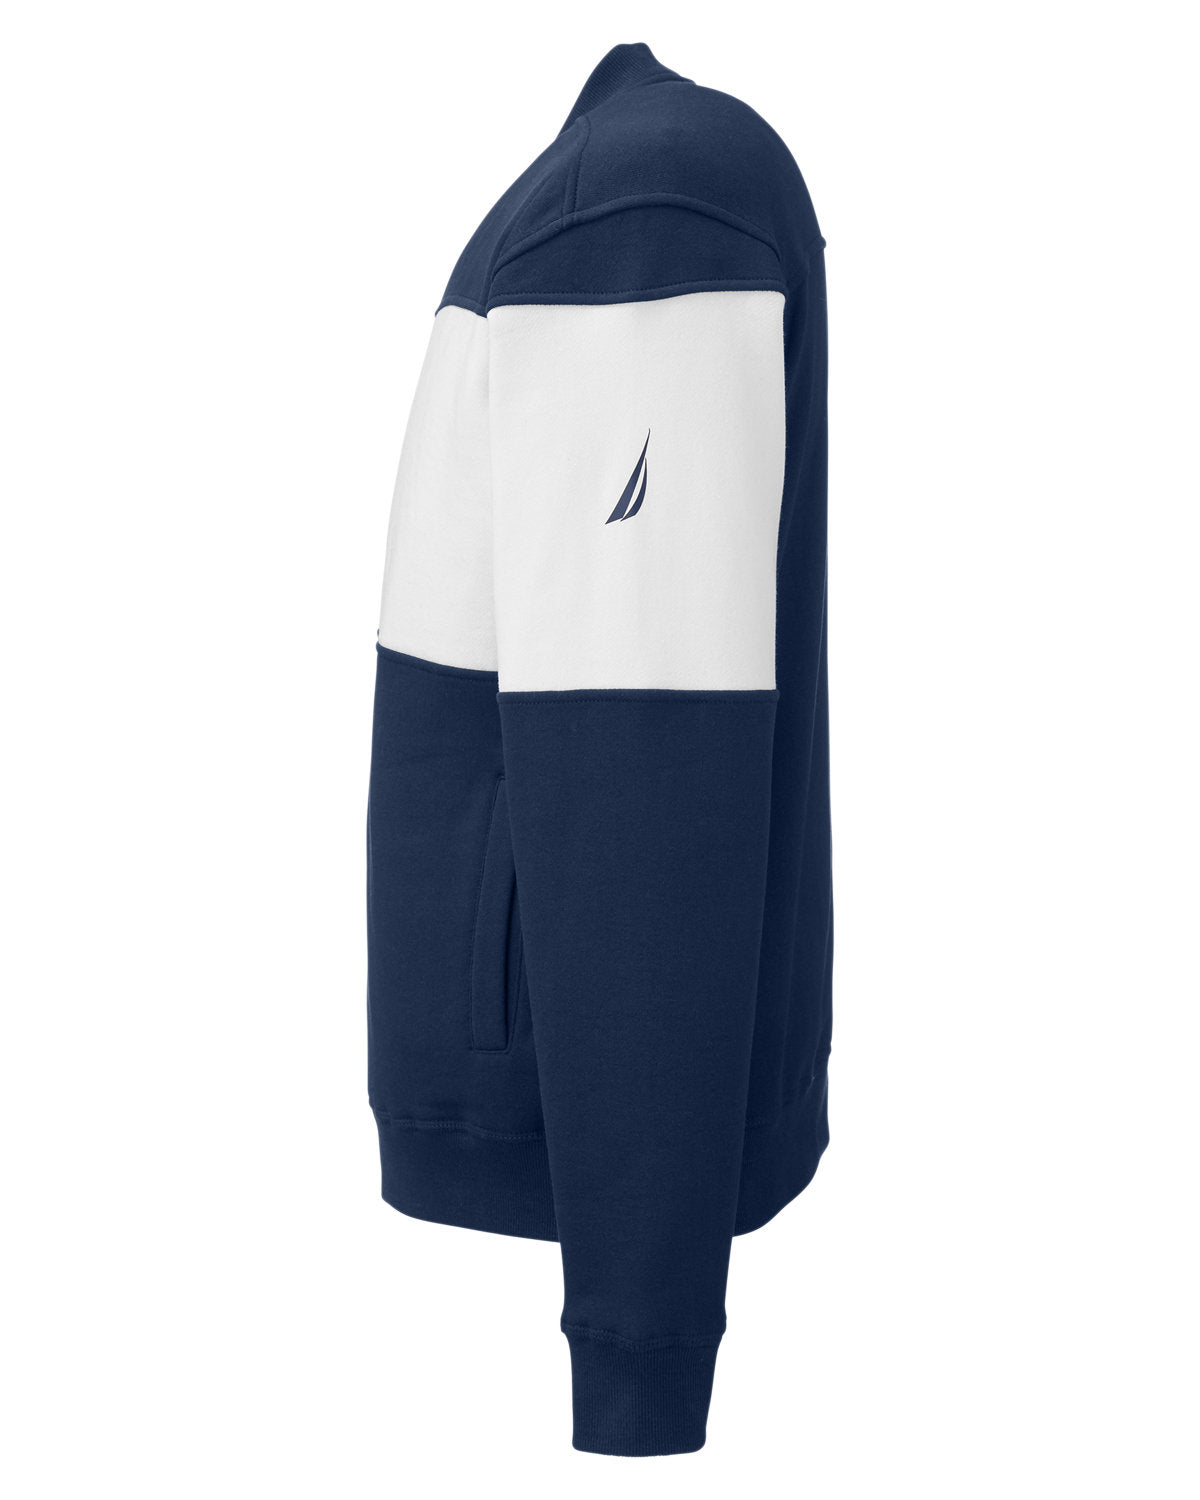 Nautica Anchor Bomber Full-Zip Fleece Jacket